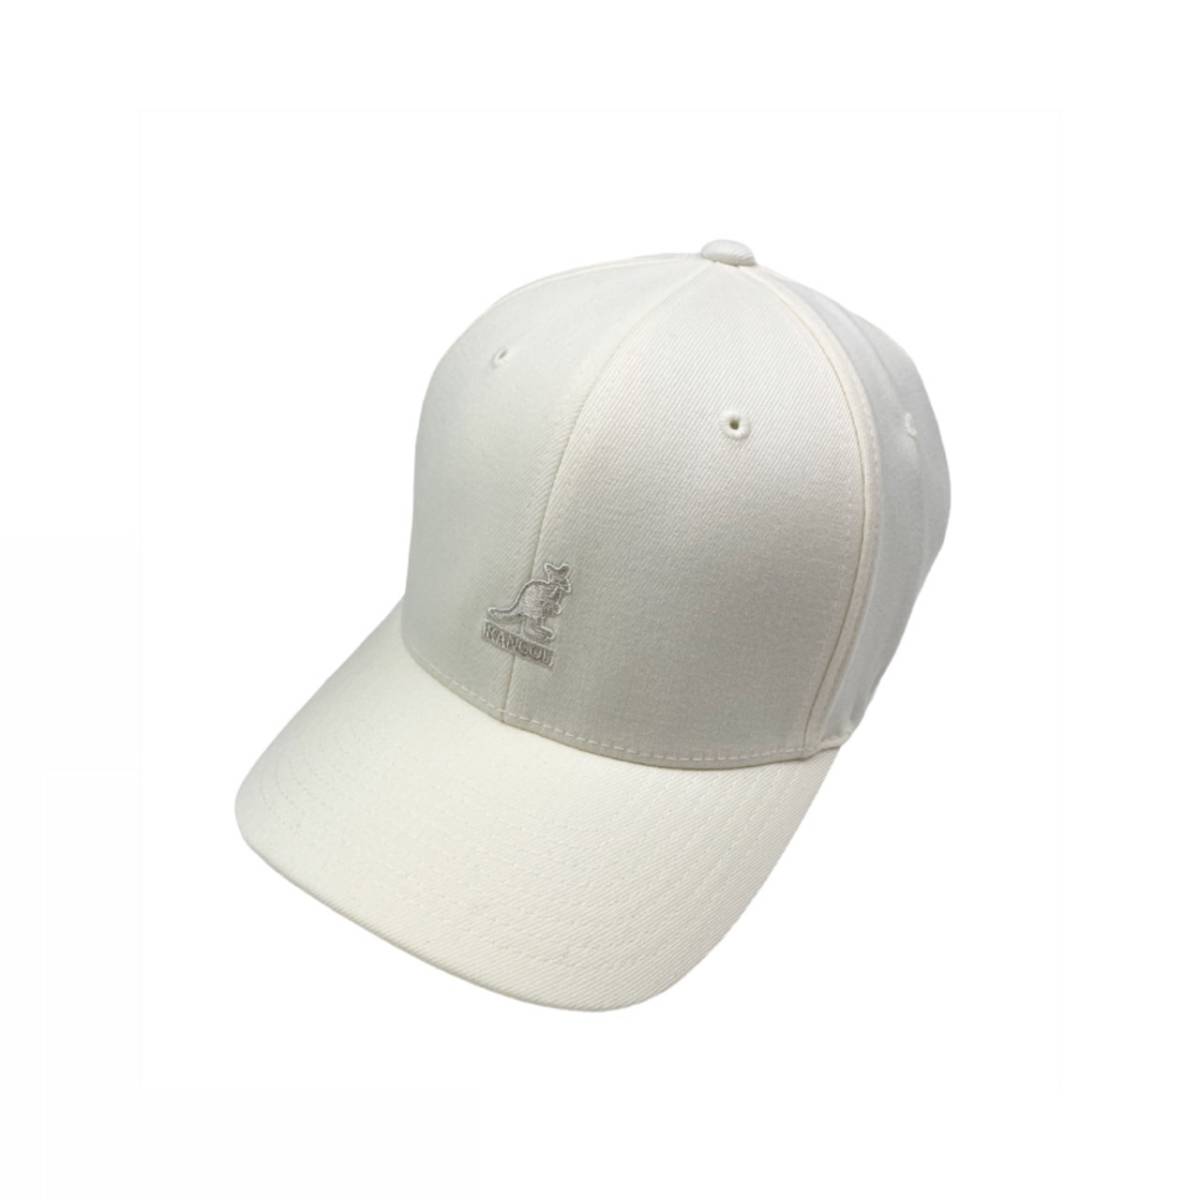 カンゴール キャップ 帽子 8650BC ウール フレックス フィット メンズ レディース ホワイト S/M KANGOL WOOL FLEXFIT BASEBALL 新品_画像4